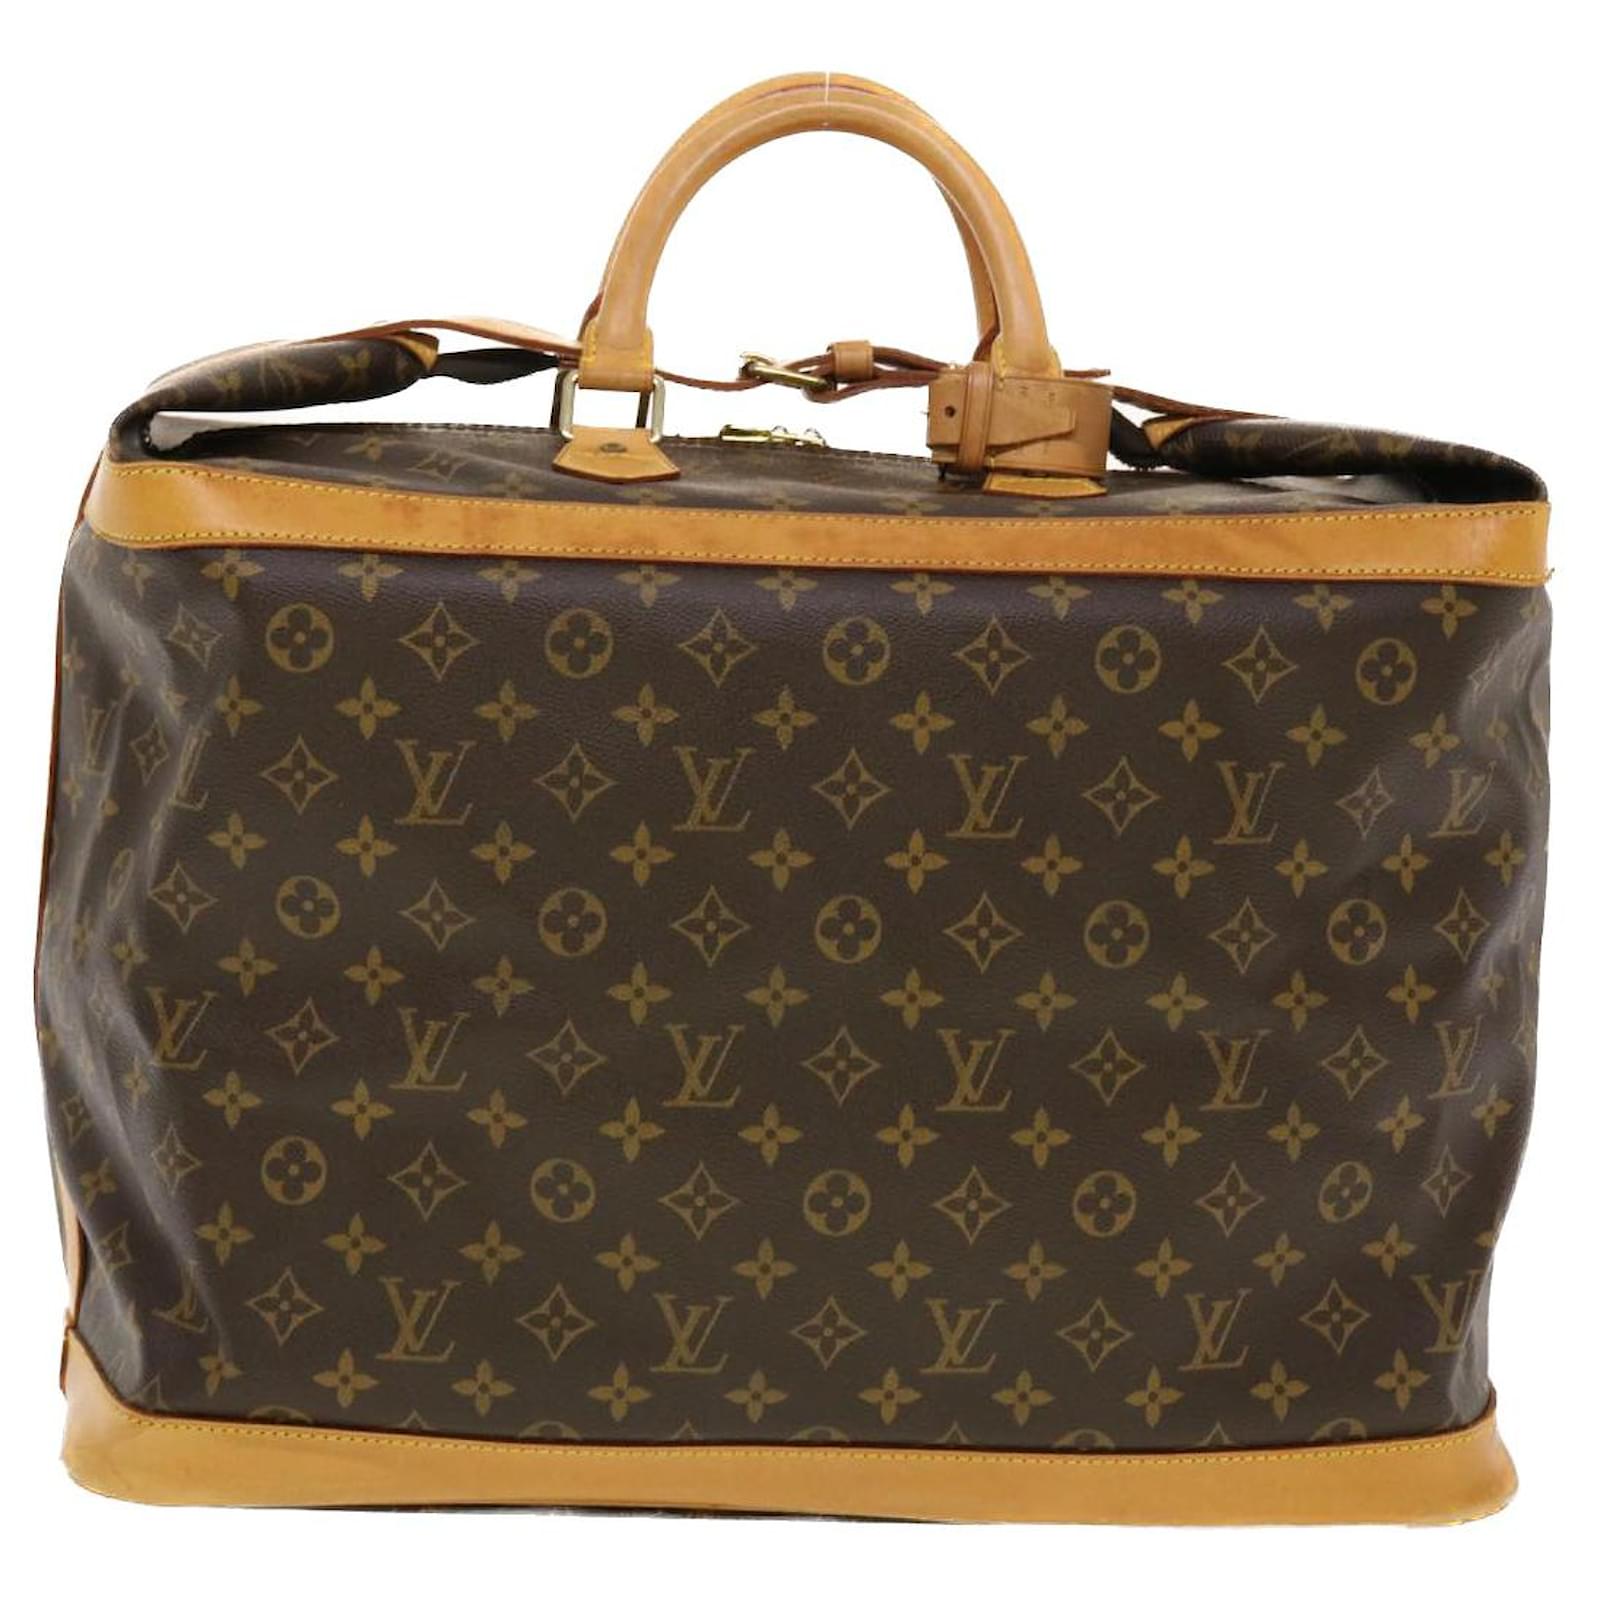 Louis Vuitton Monogram Cruiser Bag 45 M41138 Women's Boston Bag